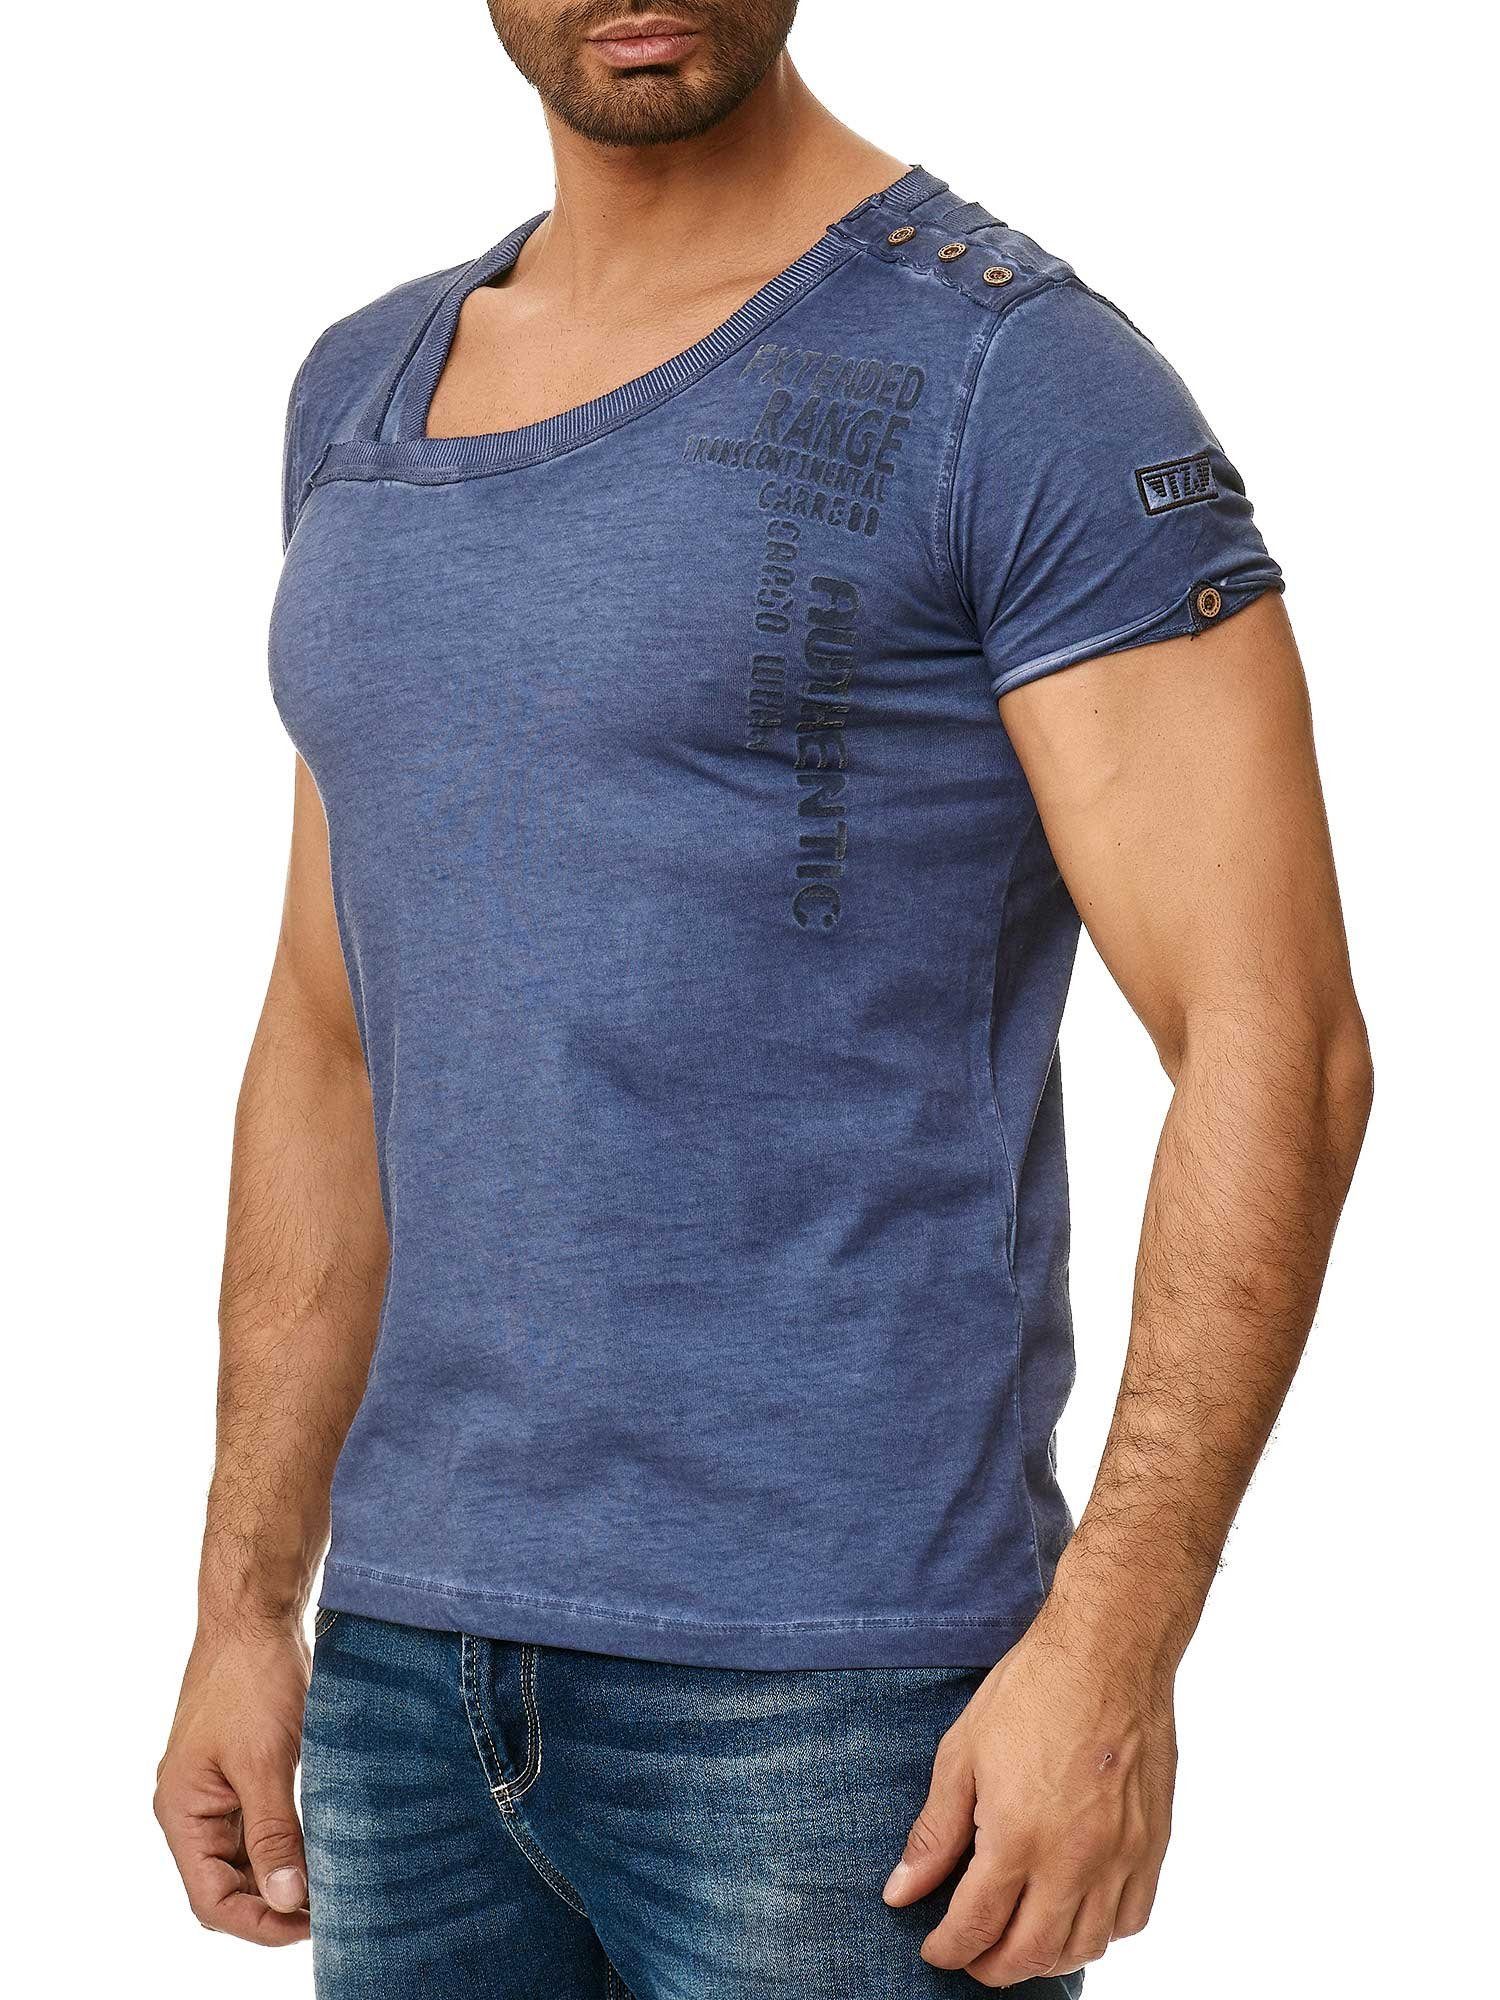 Tazzio T-Shirt 4022 in trendiger Ölwaschung mit stylischem Kragen und Knopfleiste an der Schulter